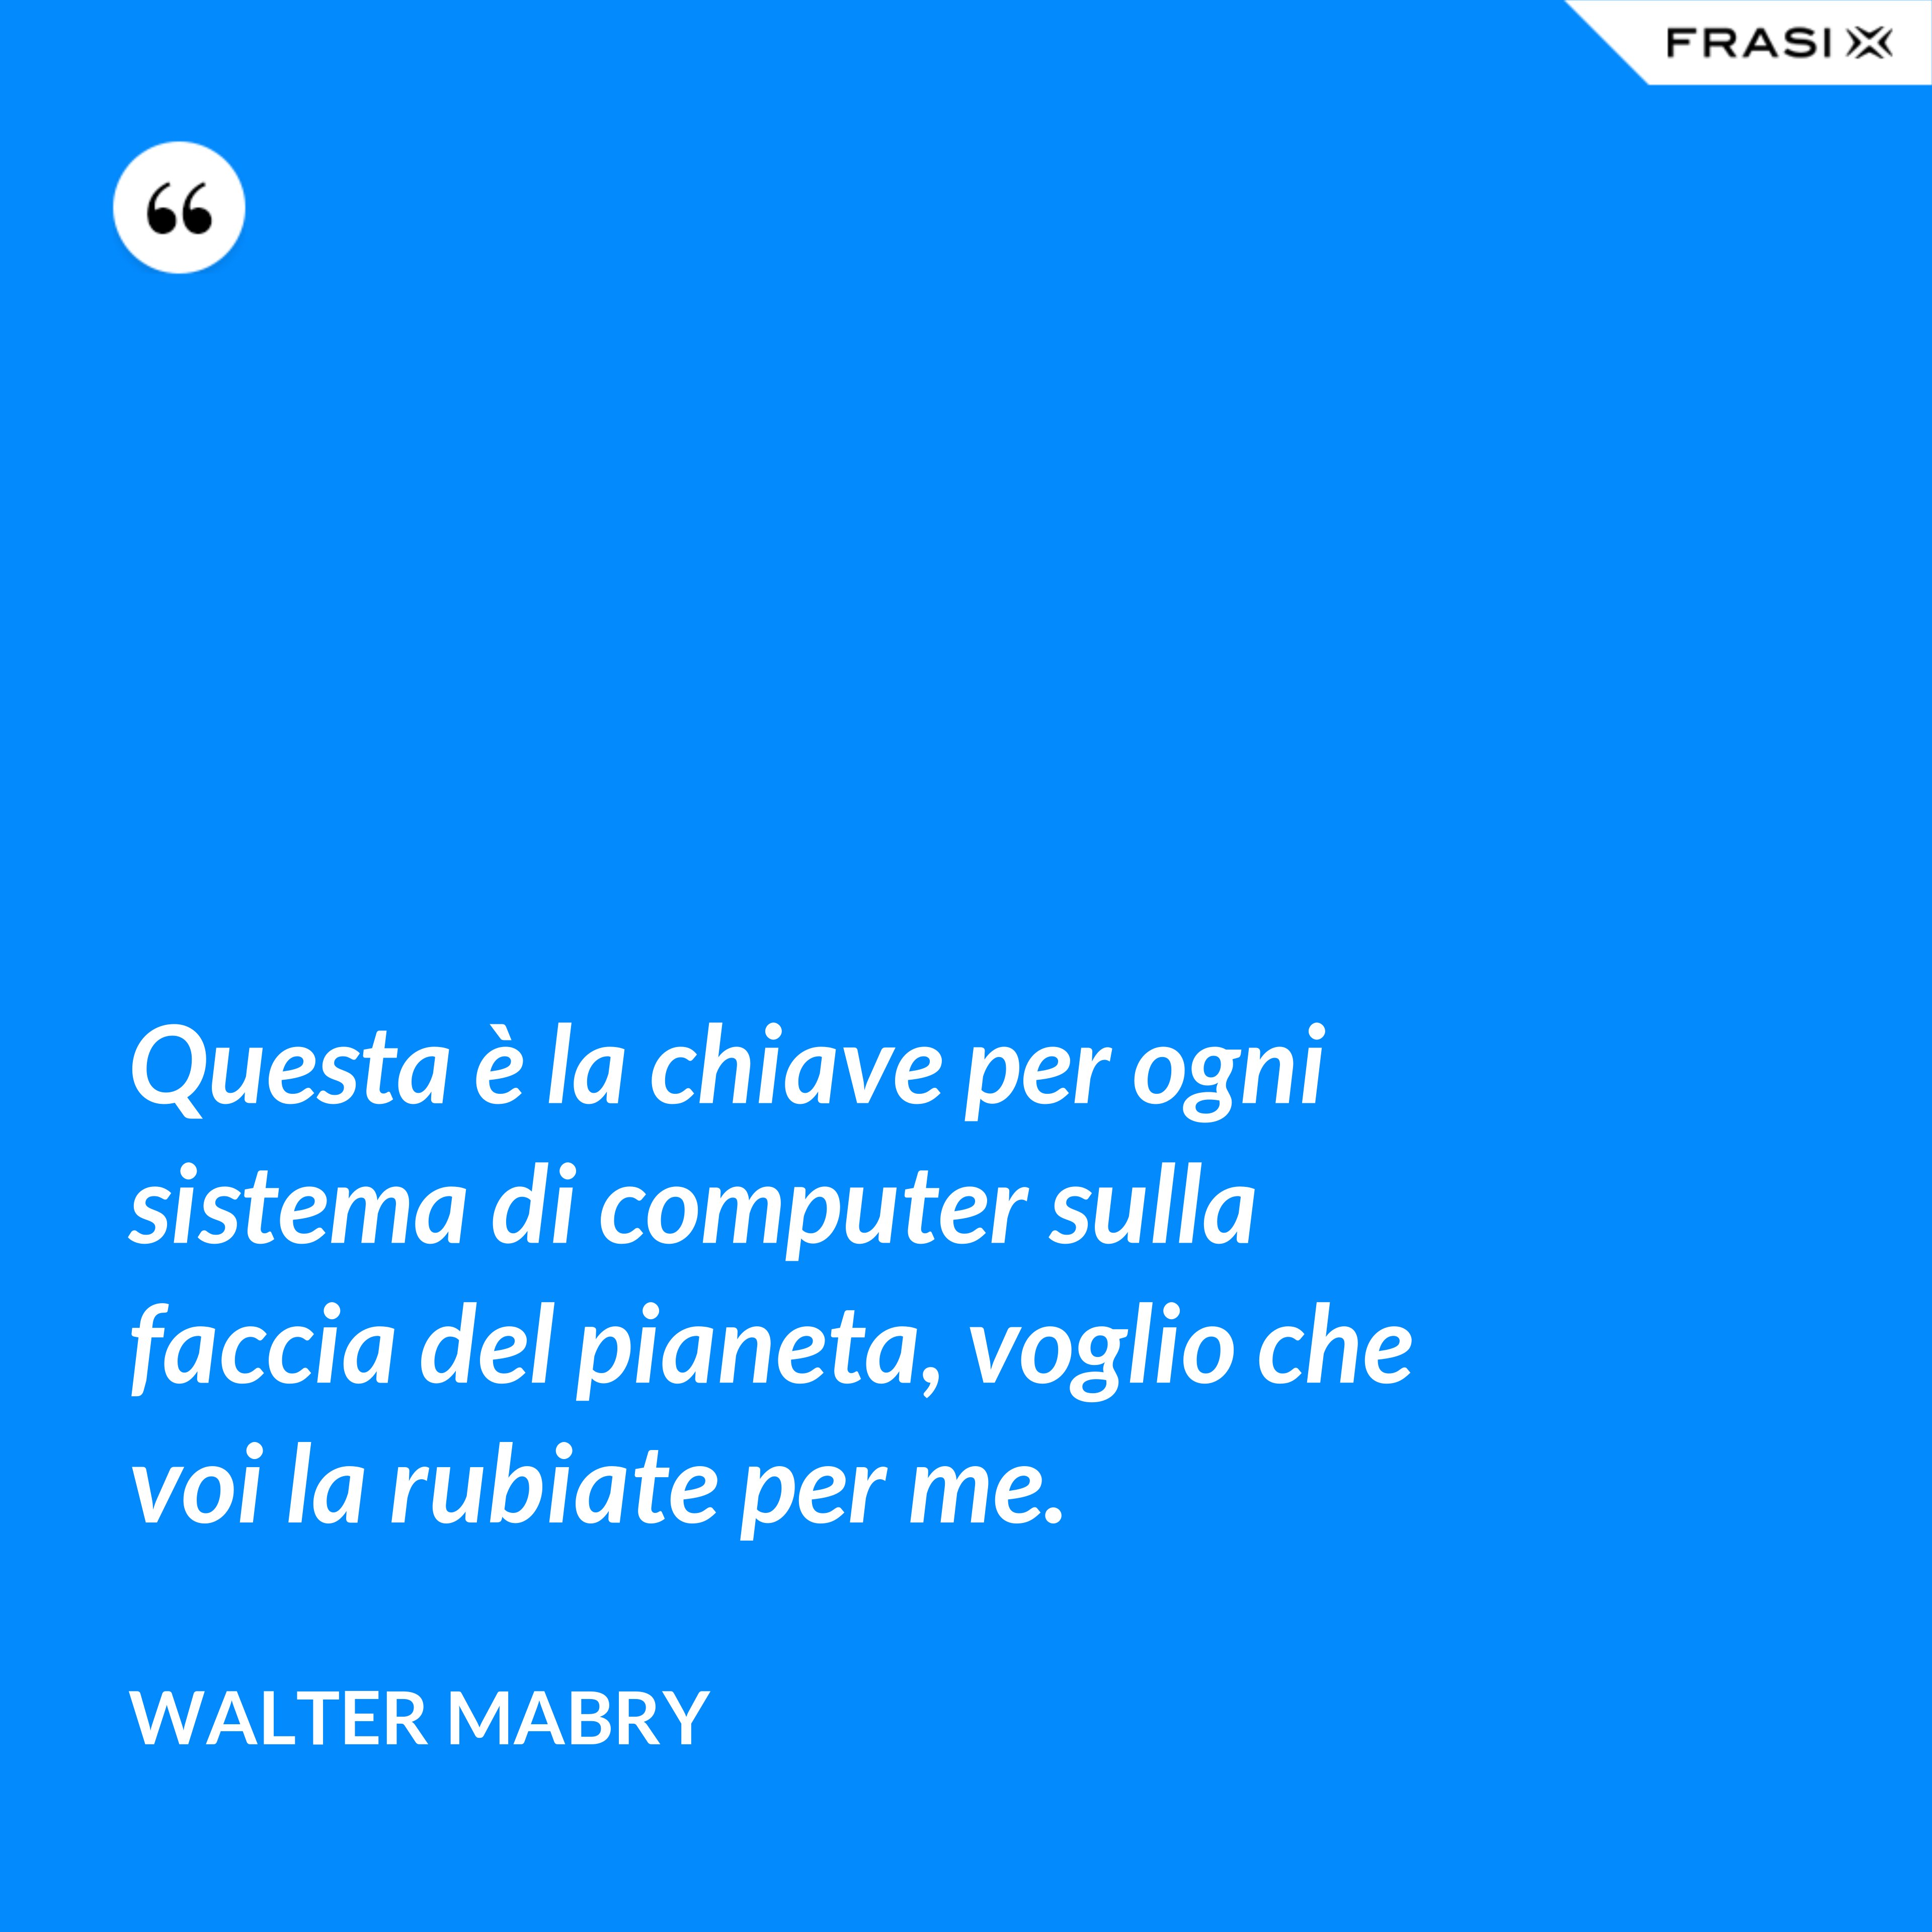 Questa è la chiave per ogni sistema di computer sulla faccia del pianeta, voglio che voi la rubiate per me. - Walter Mabry